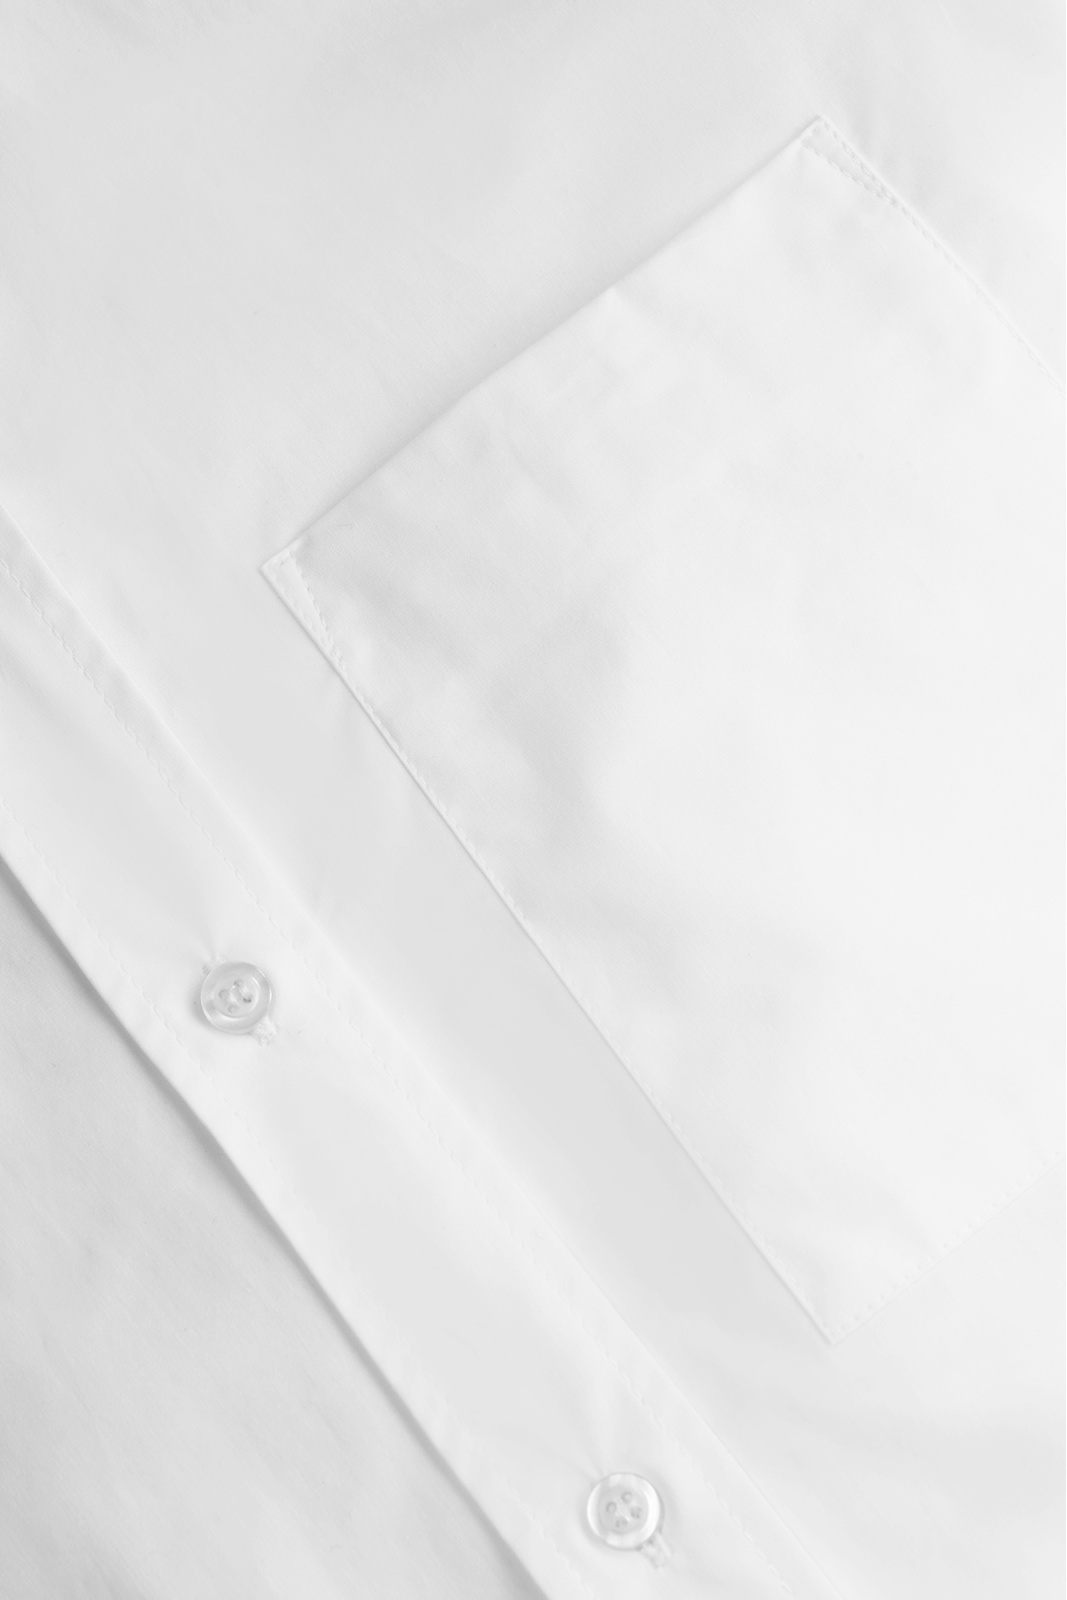 Koi Shirt White Shirts, blouses, tops Elementy